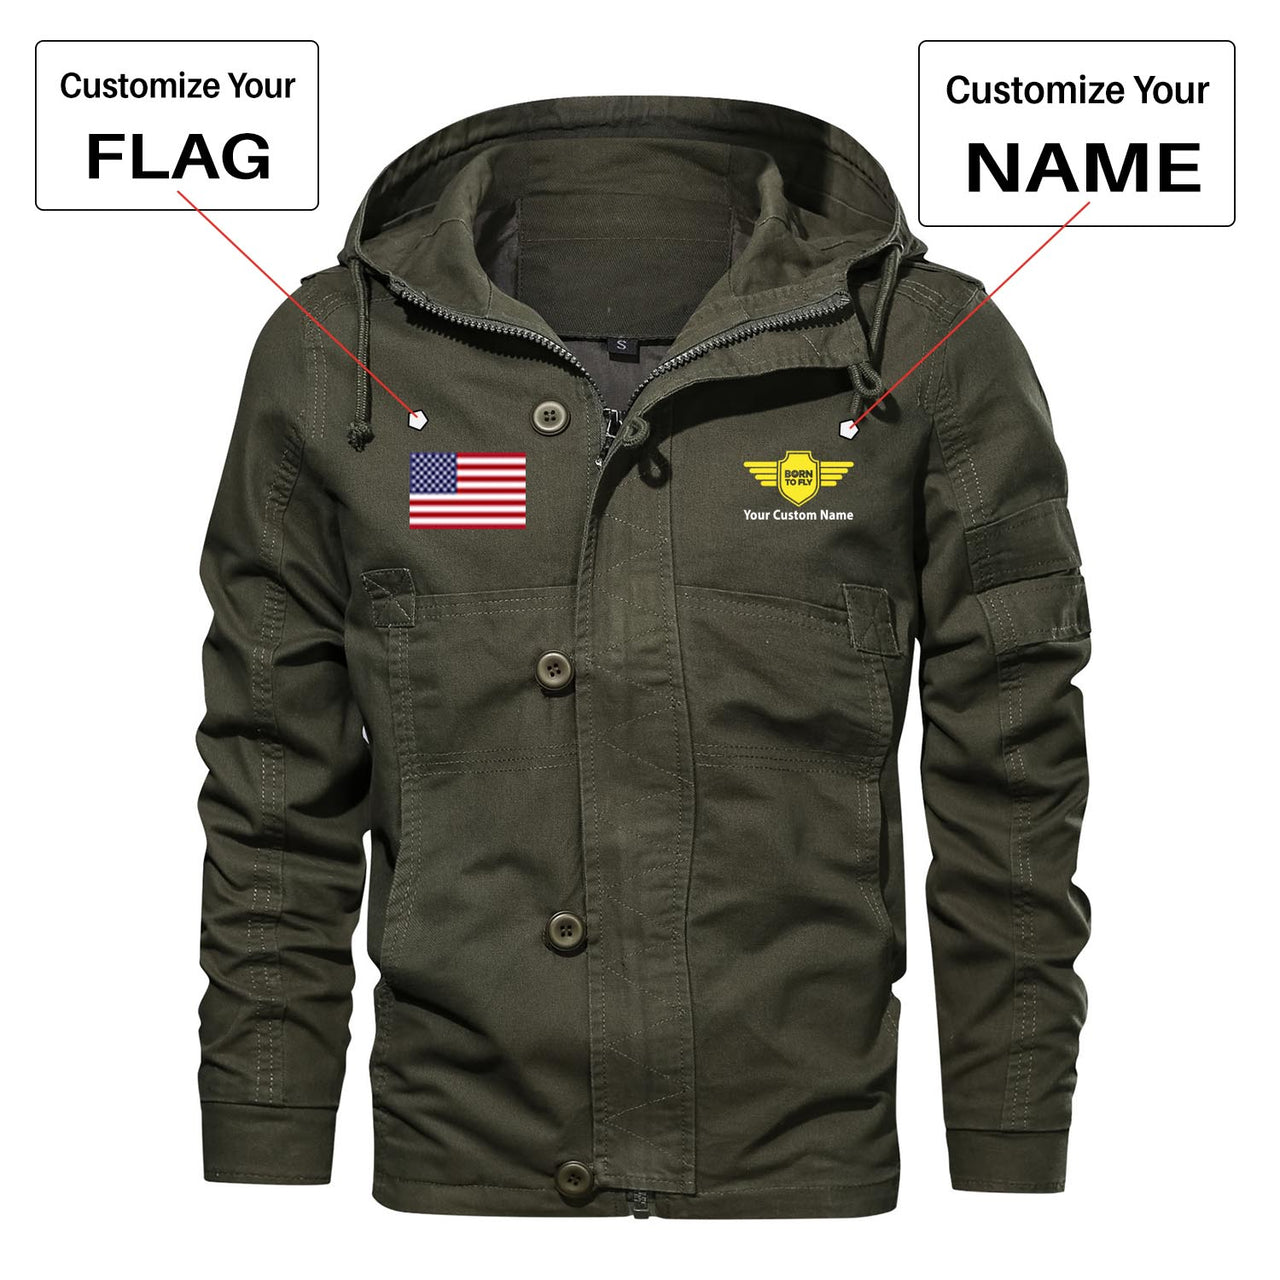 Custom Flag & Name "Badge 5" Designed Cotton Jackets